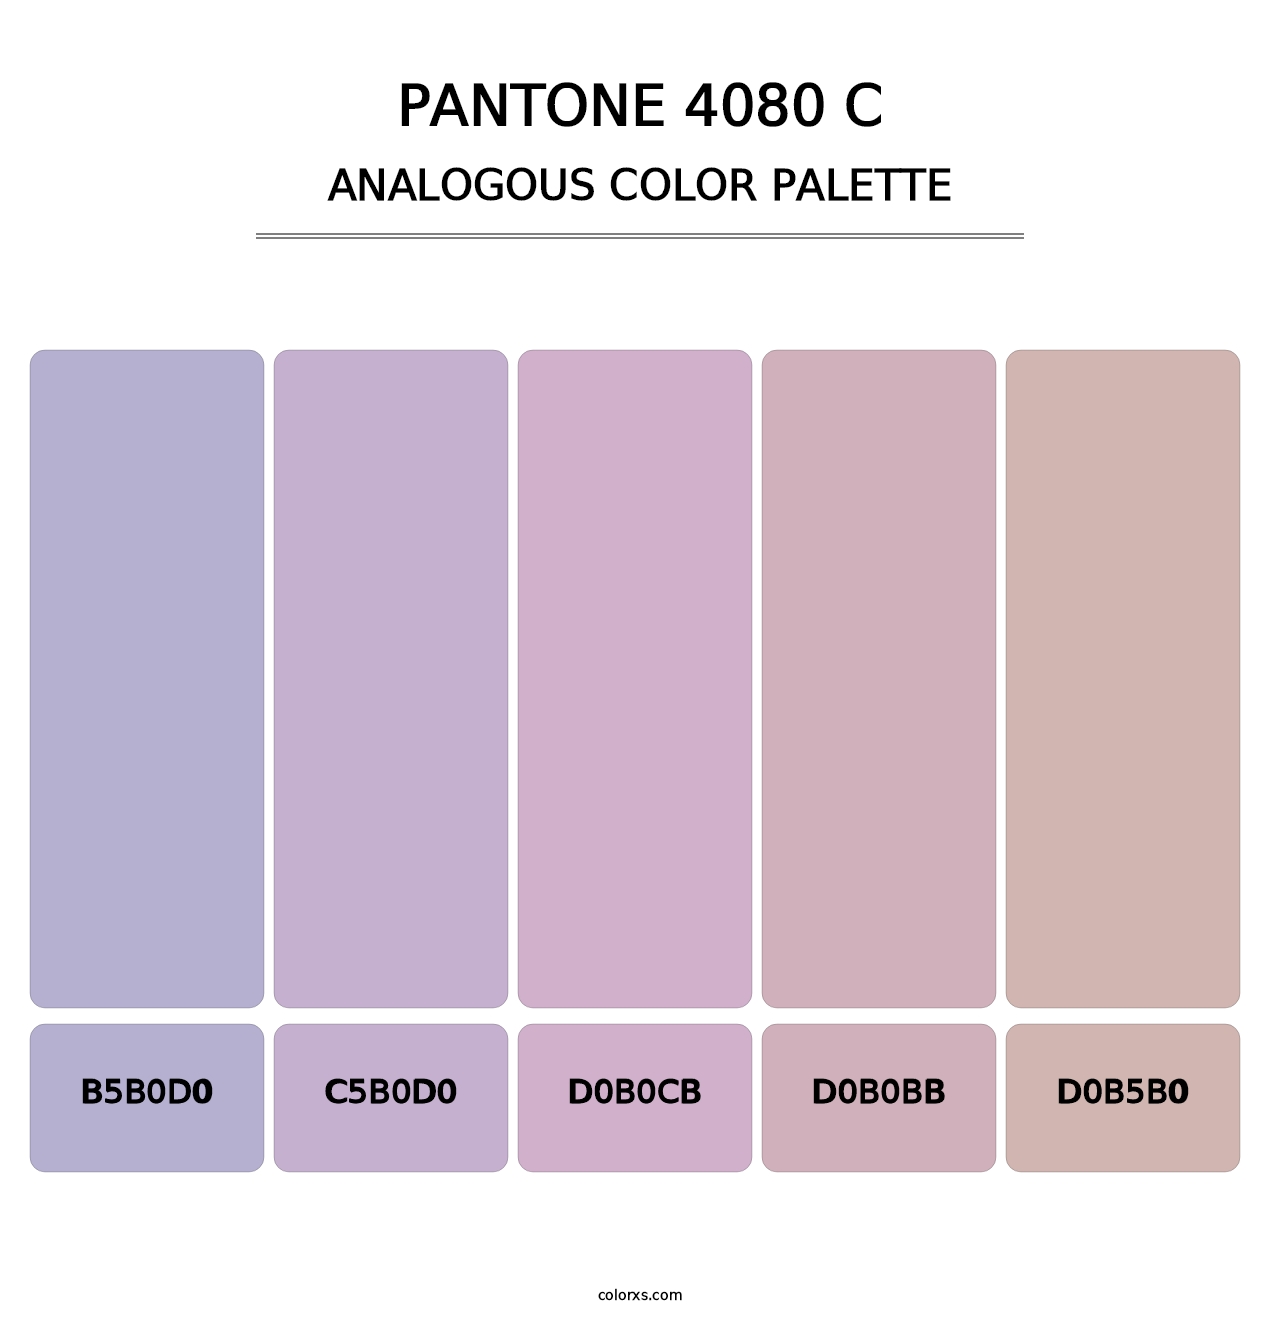 PANTONE 4080 C - Analogous Color Palette